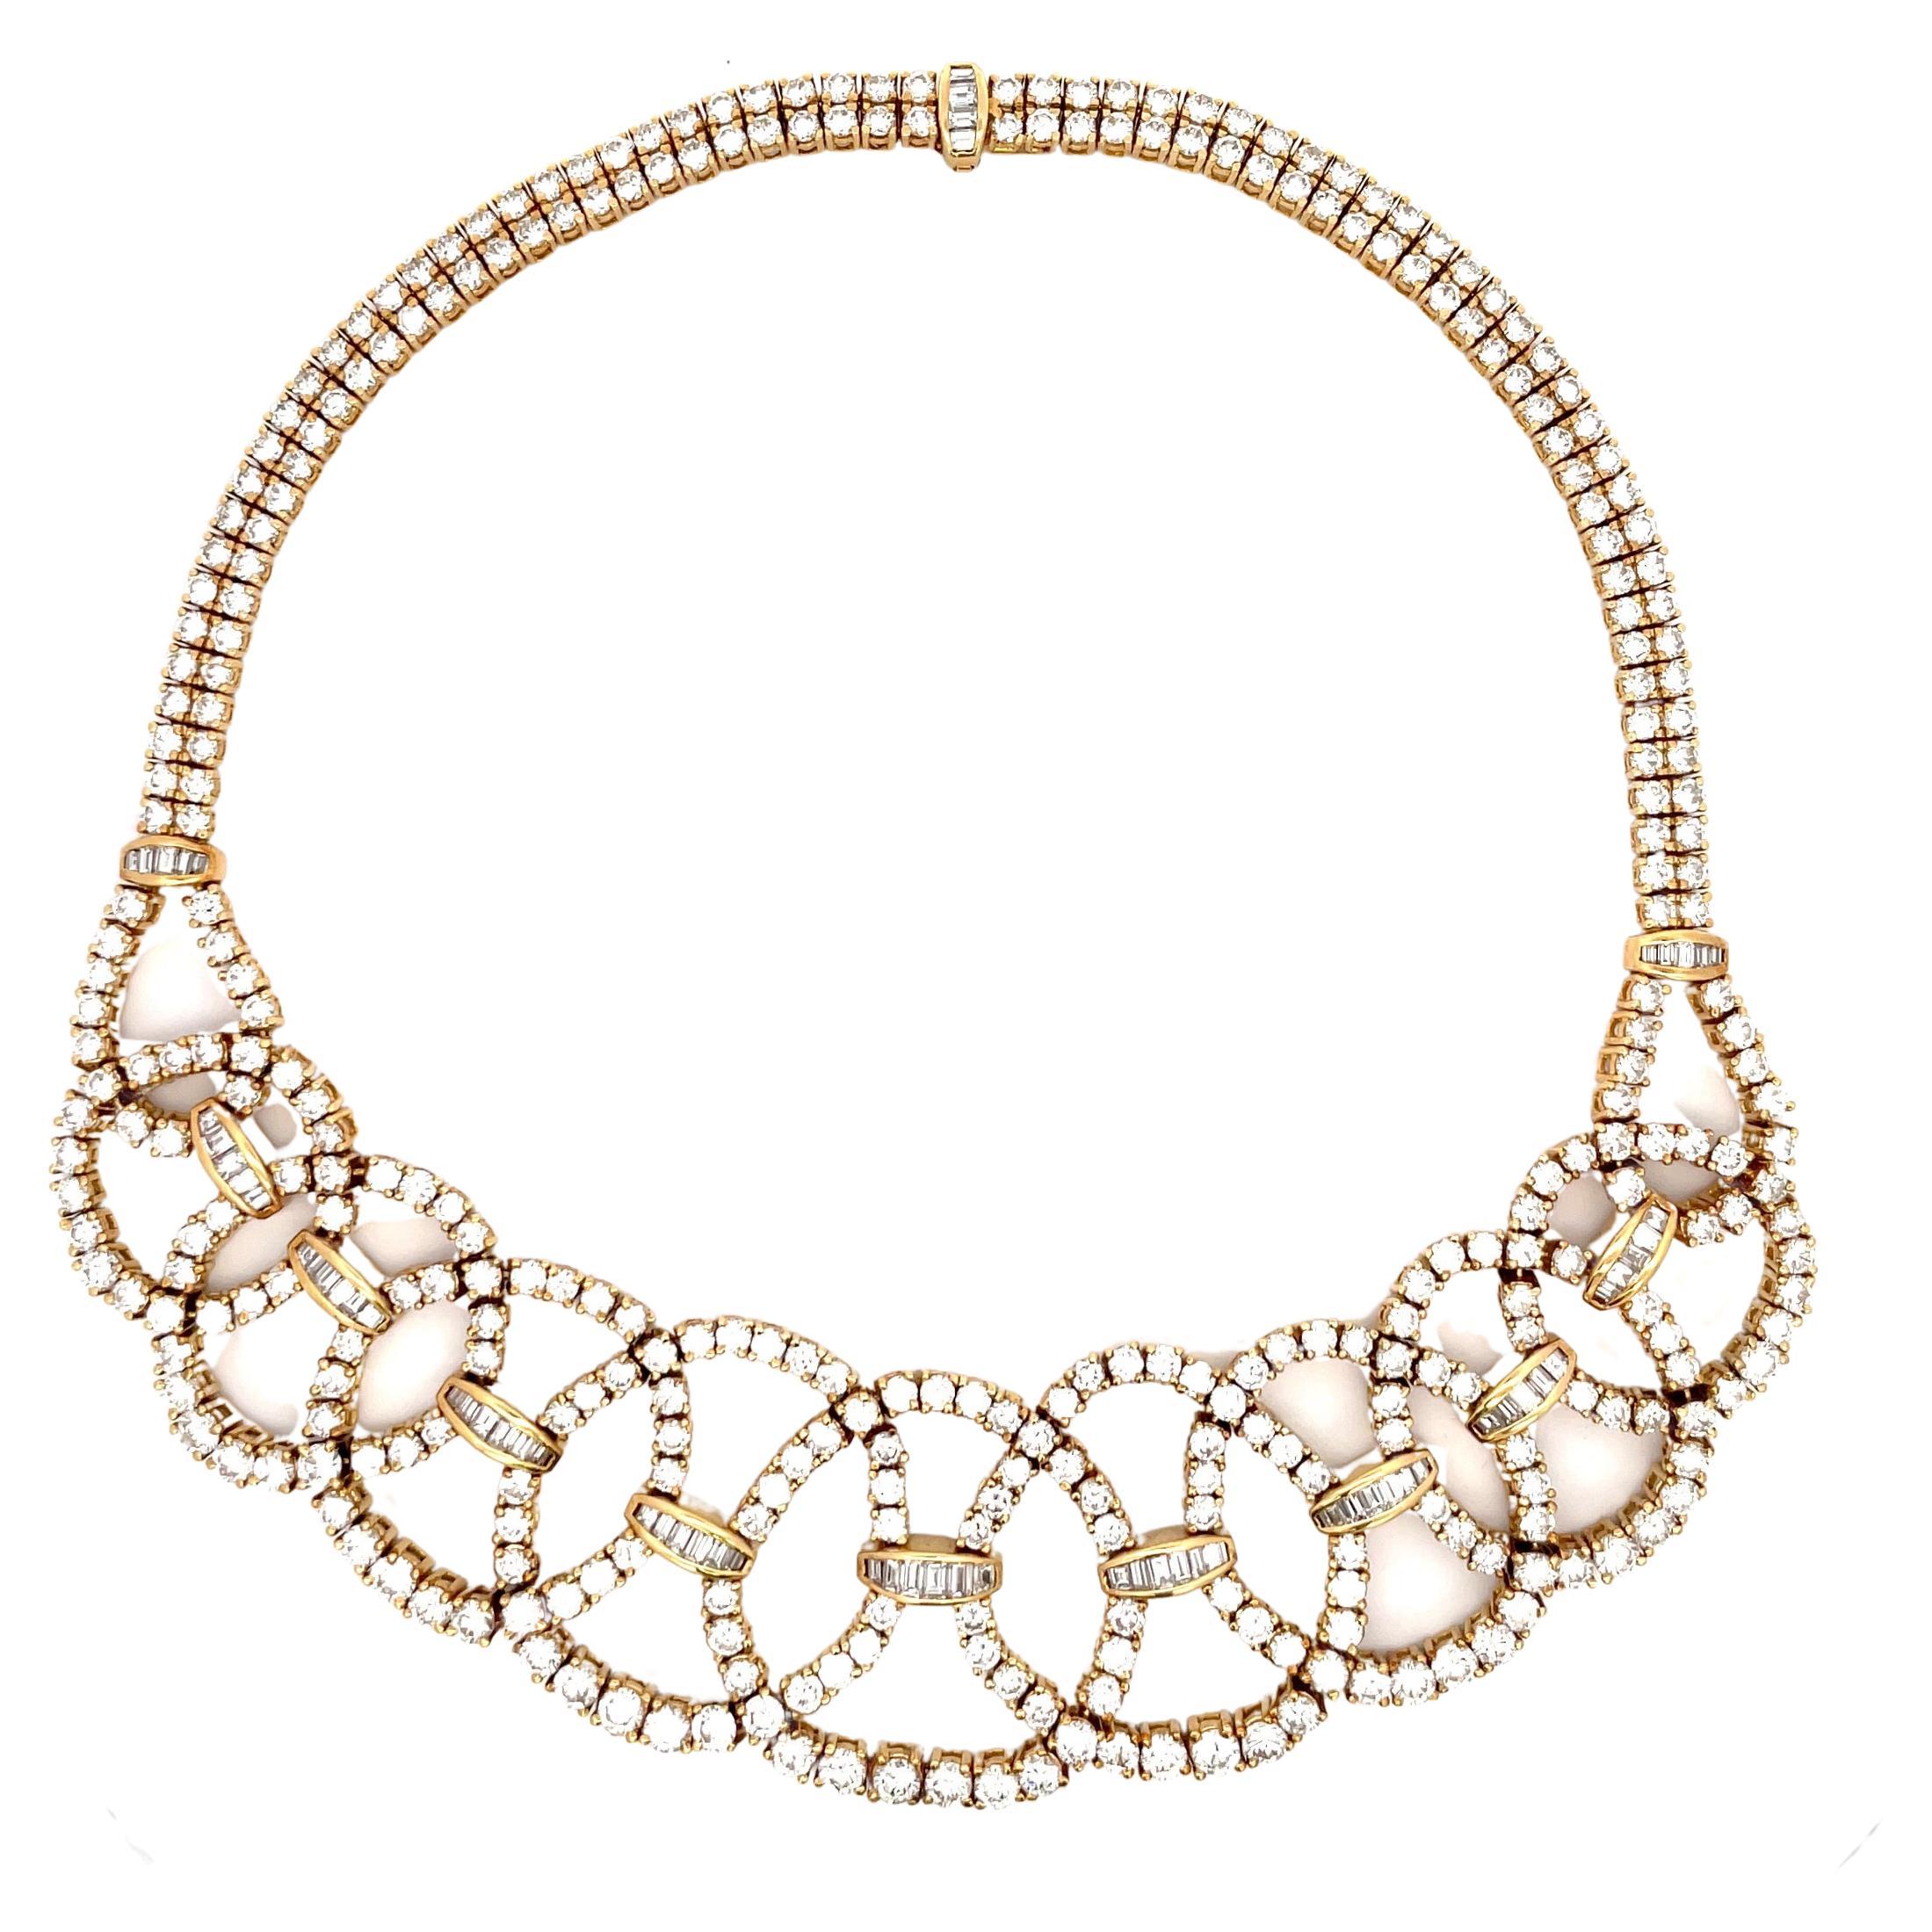 Circa 1950s Diamond Collar Necklace 45 Carats 18 Karat Yellow Gold